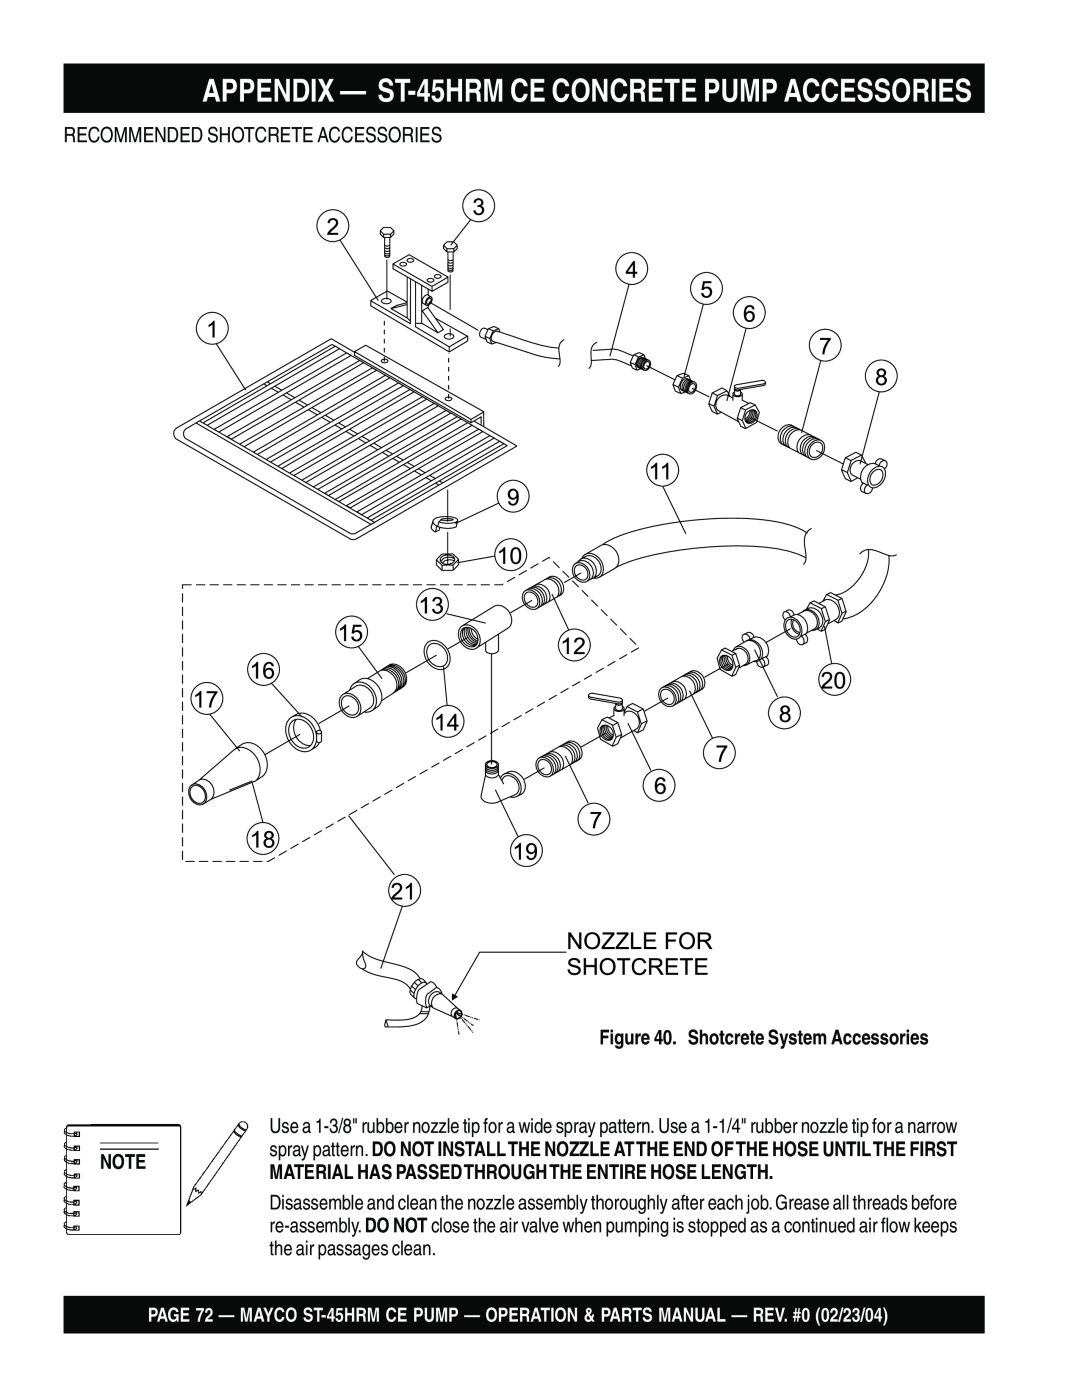 Multiquip ST-45HRM CE manual APPENDIX — ST-45HRMCE CONCRETE PUMP ACCESSORIES, Recommended Shotcrete Accessories 